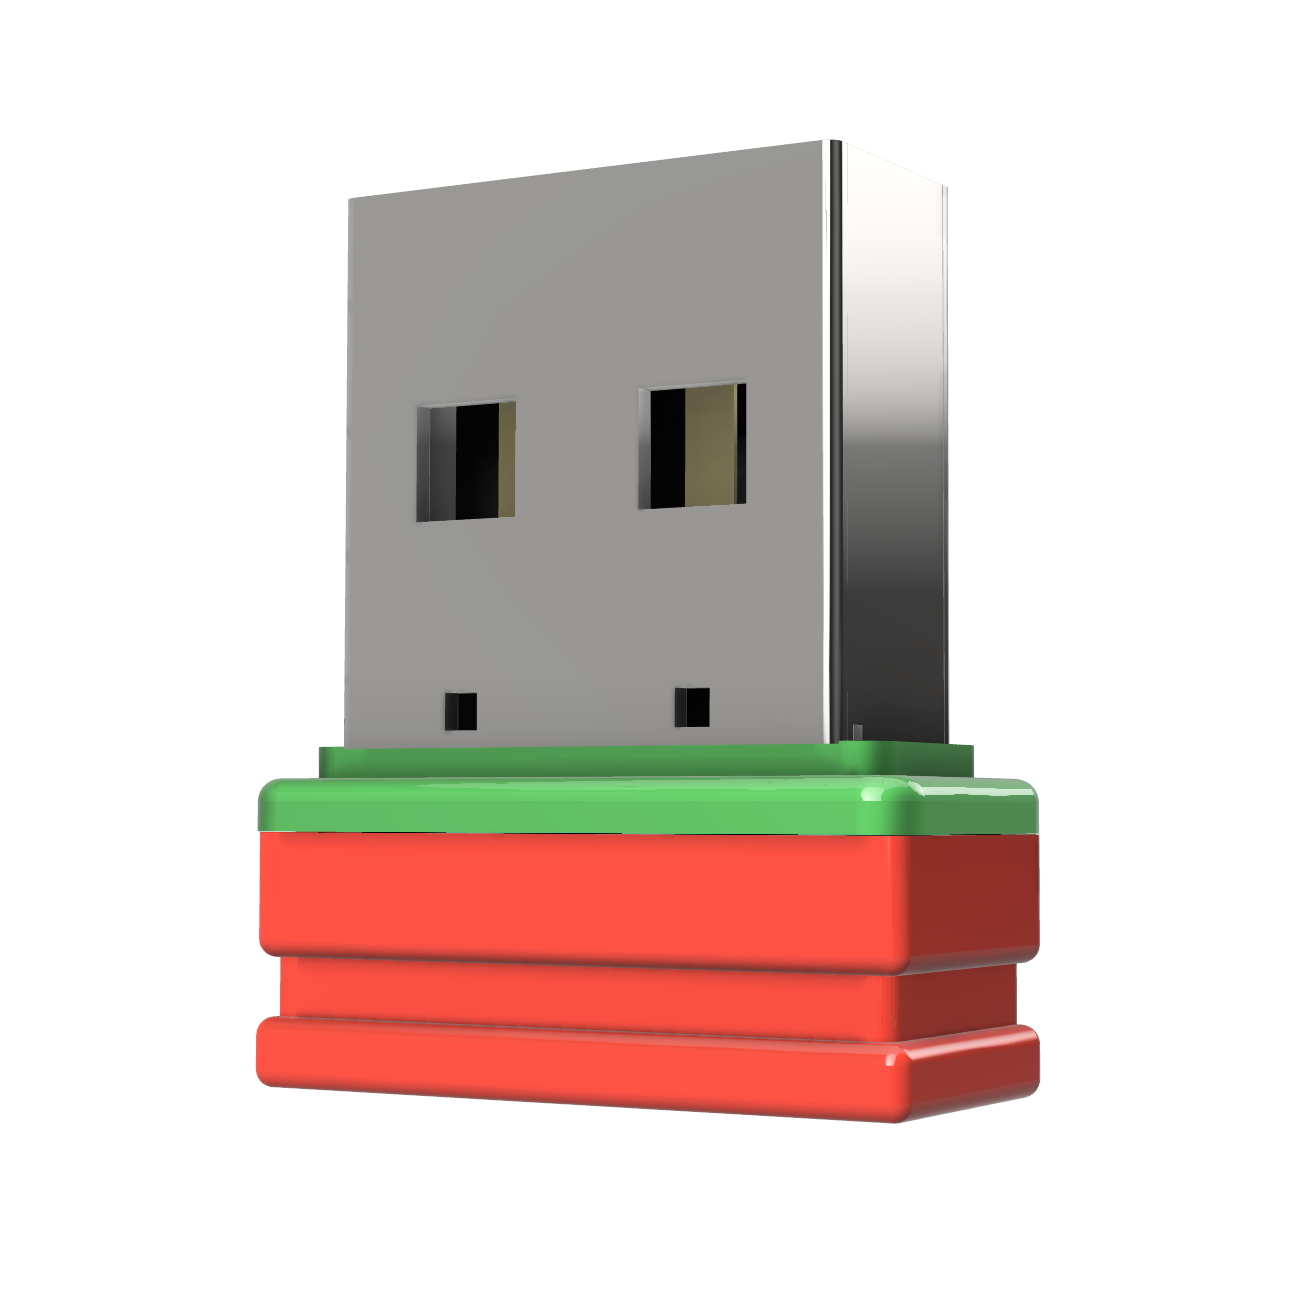 (Rot/Grün, 32 USB GB) ®ULTRA GERMANY P1 Mini USB-Stick